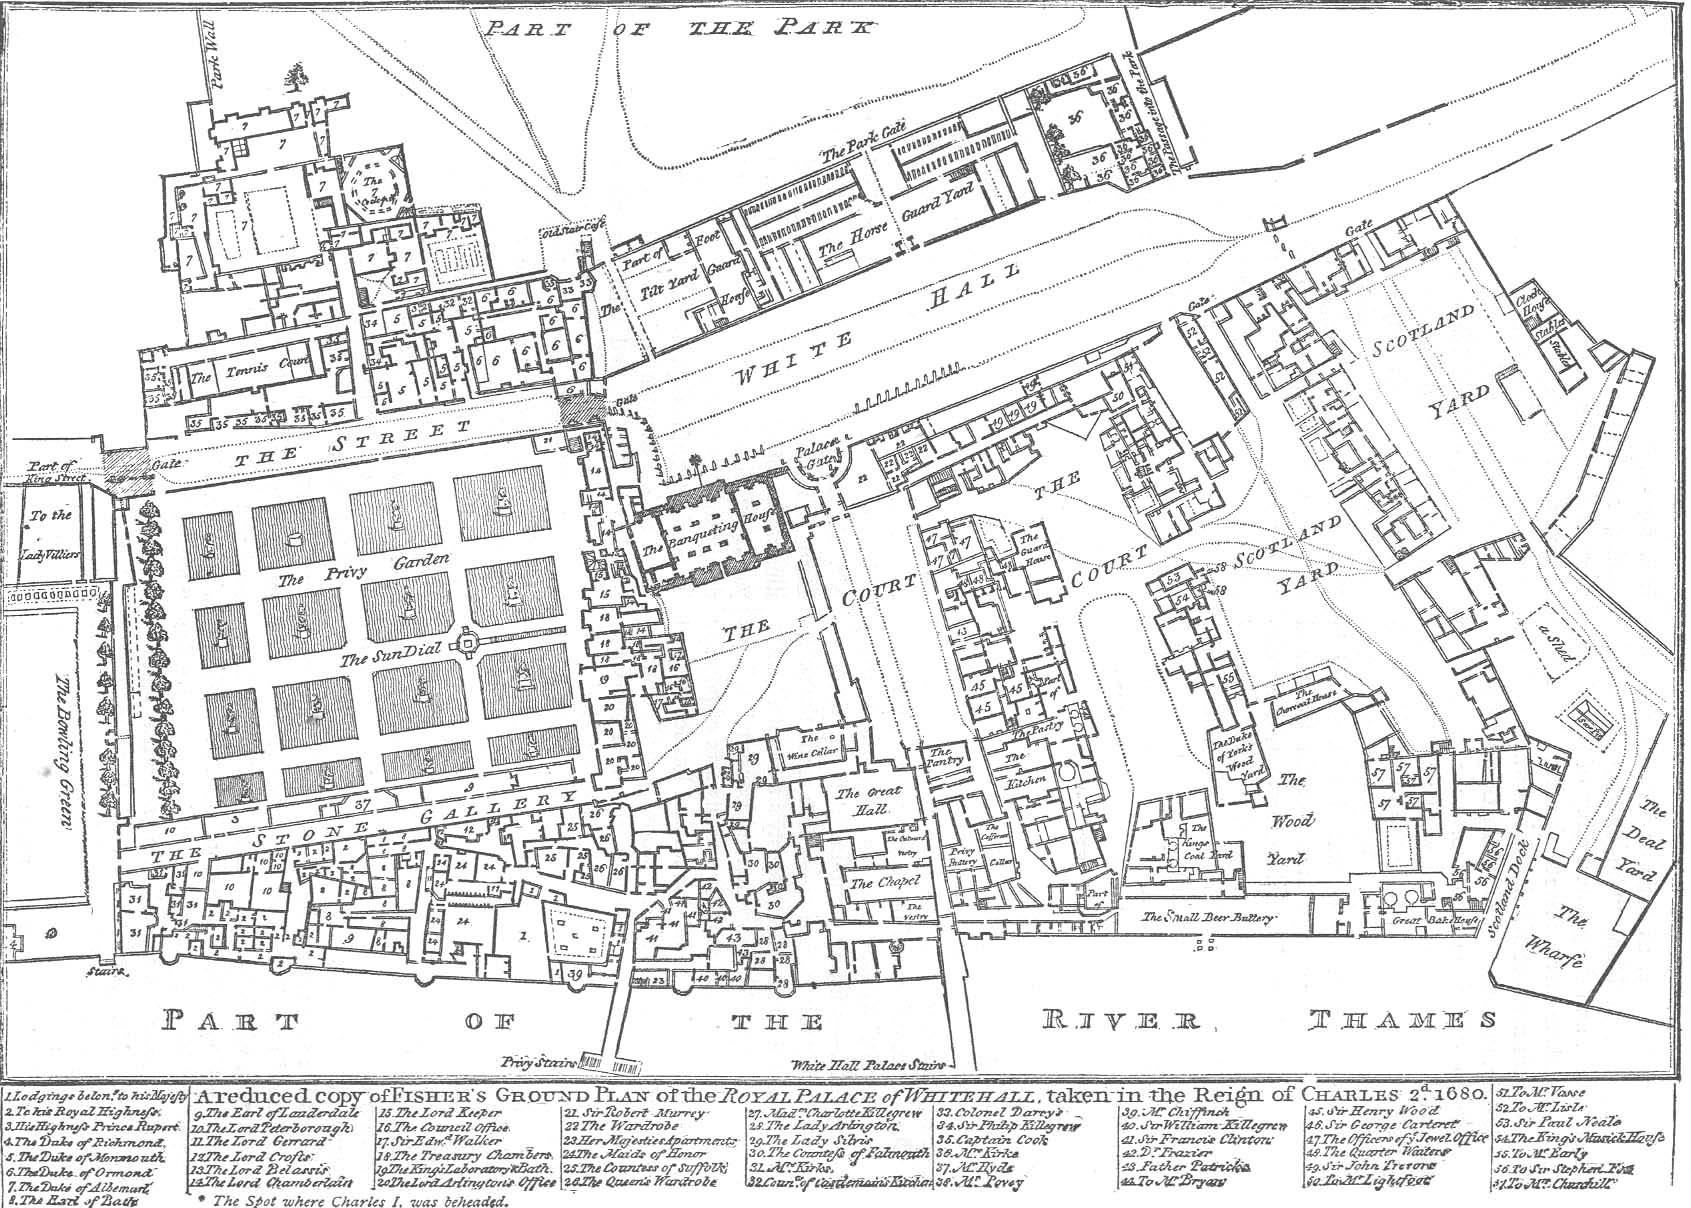 Image of Whitehall Palace floorplan